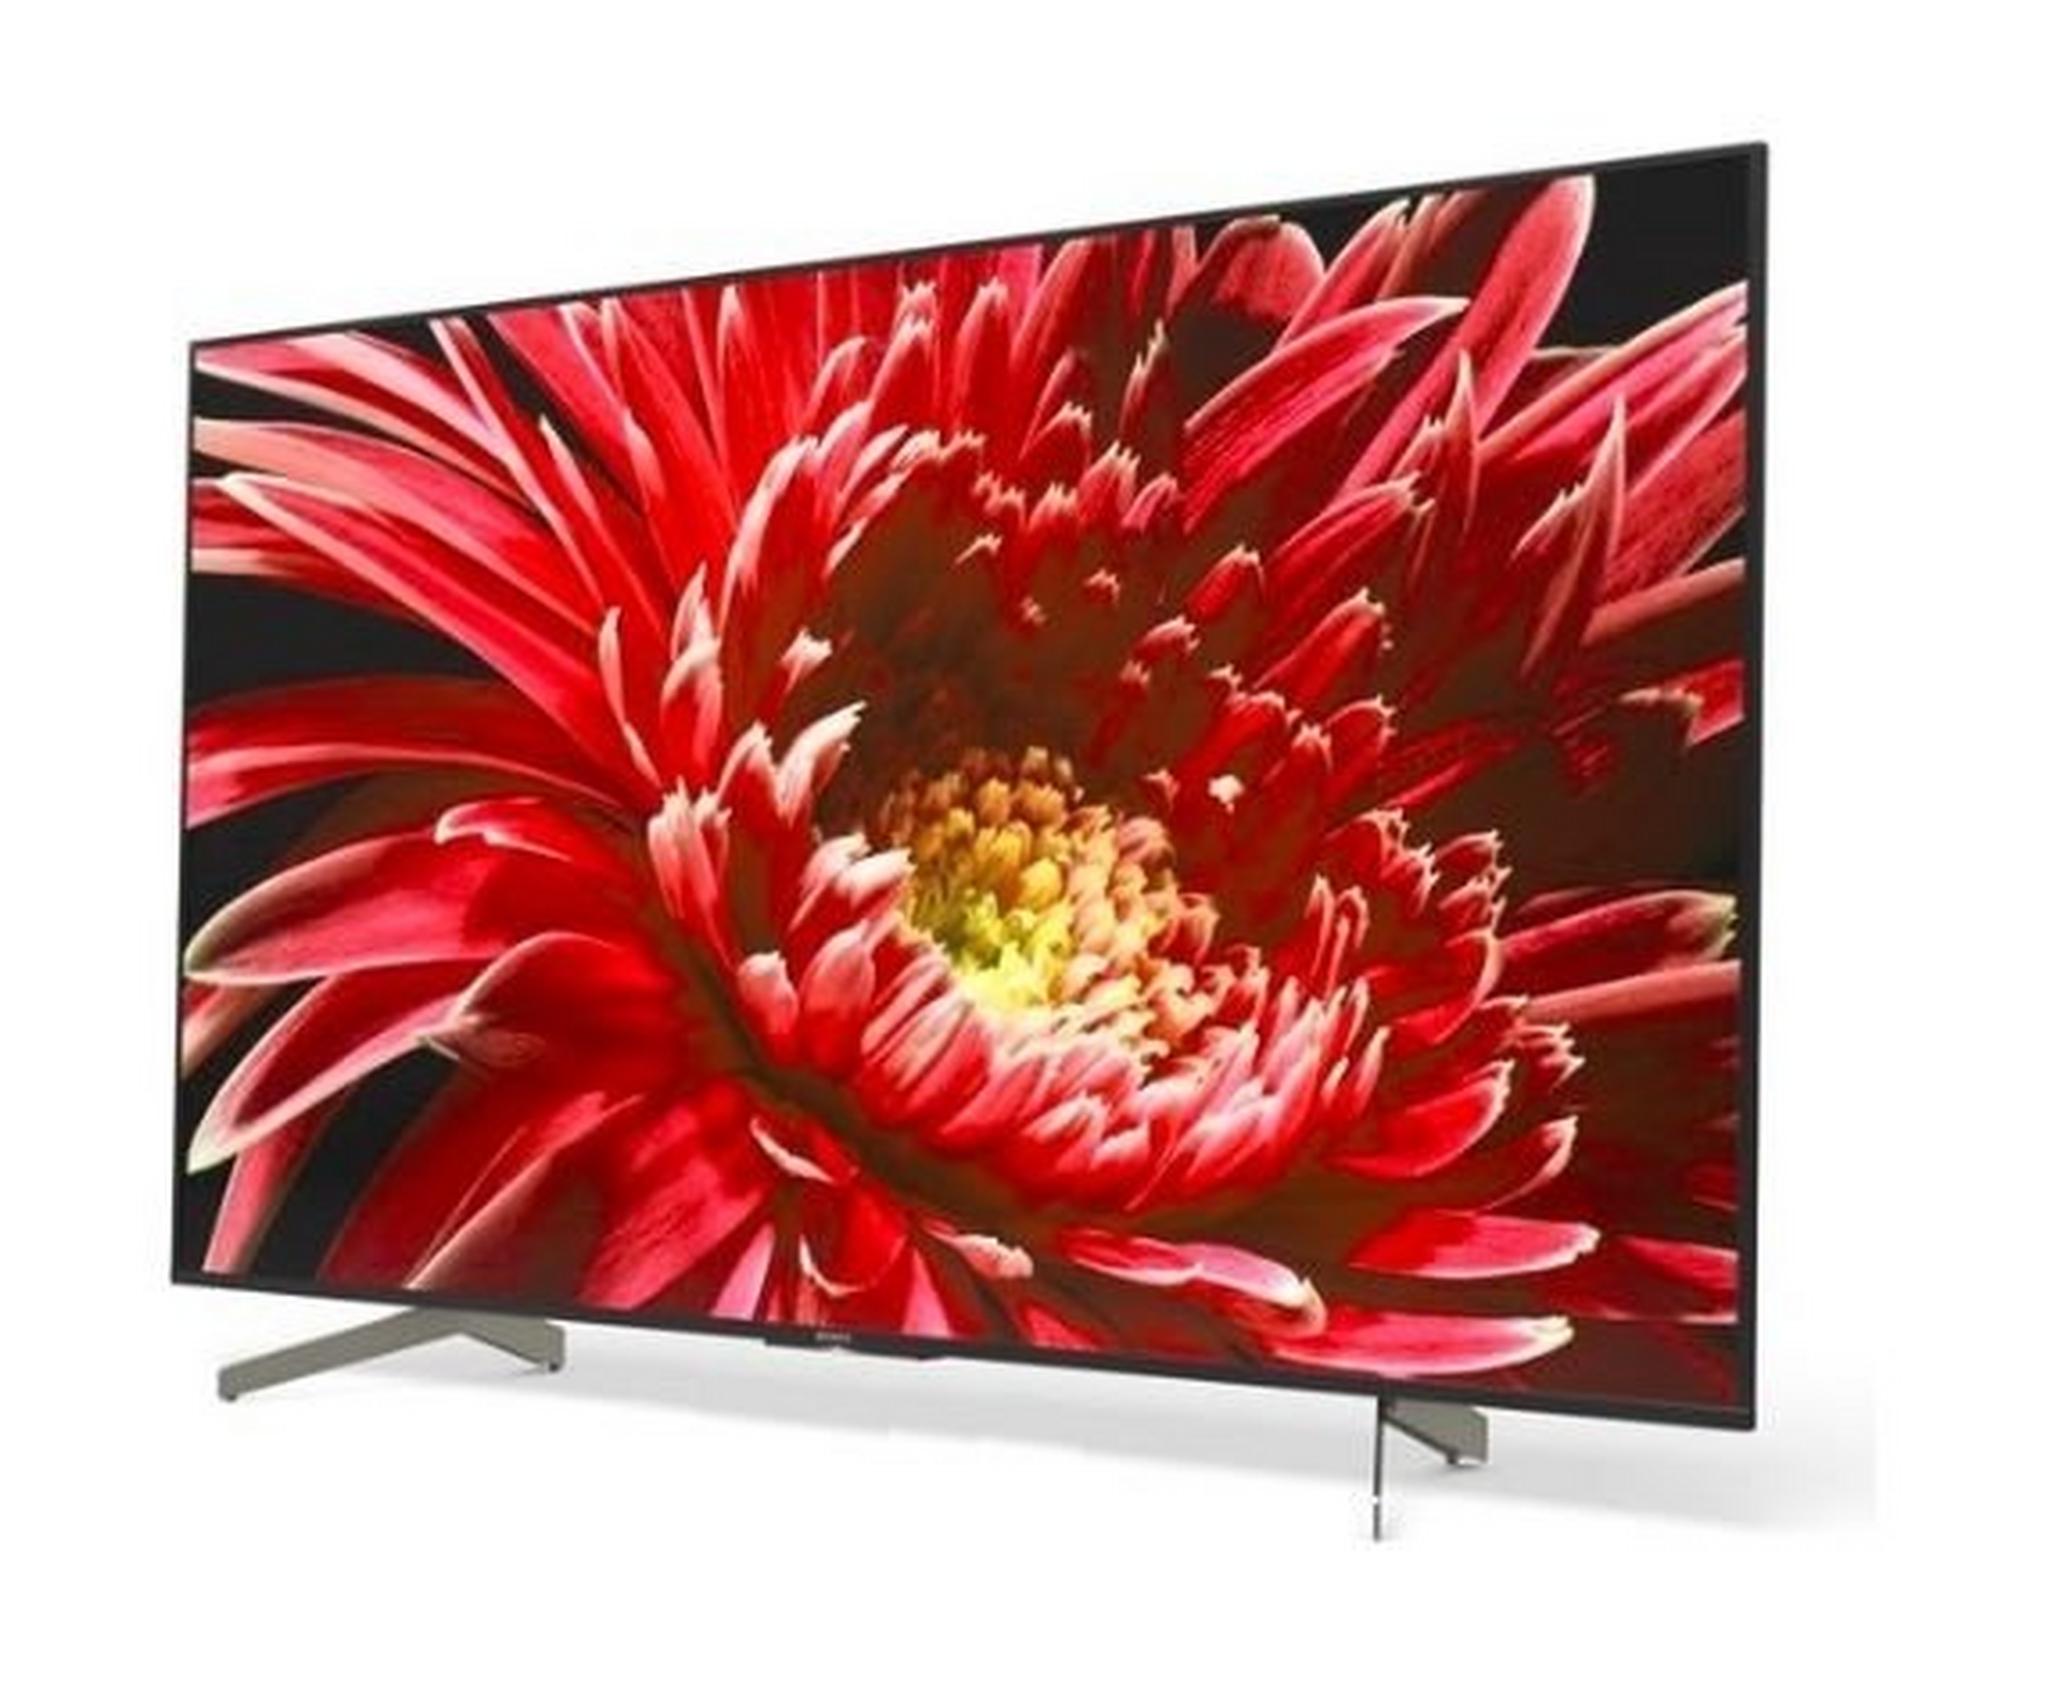 SONY TV 85 inch 4K Ultra HD Smart LED - KD-85X8500G